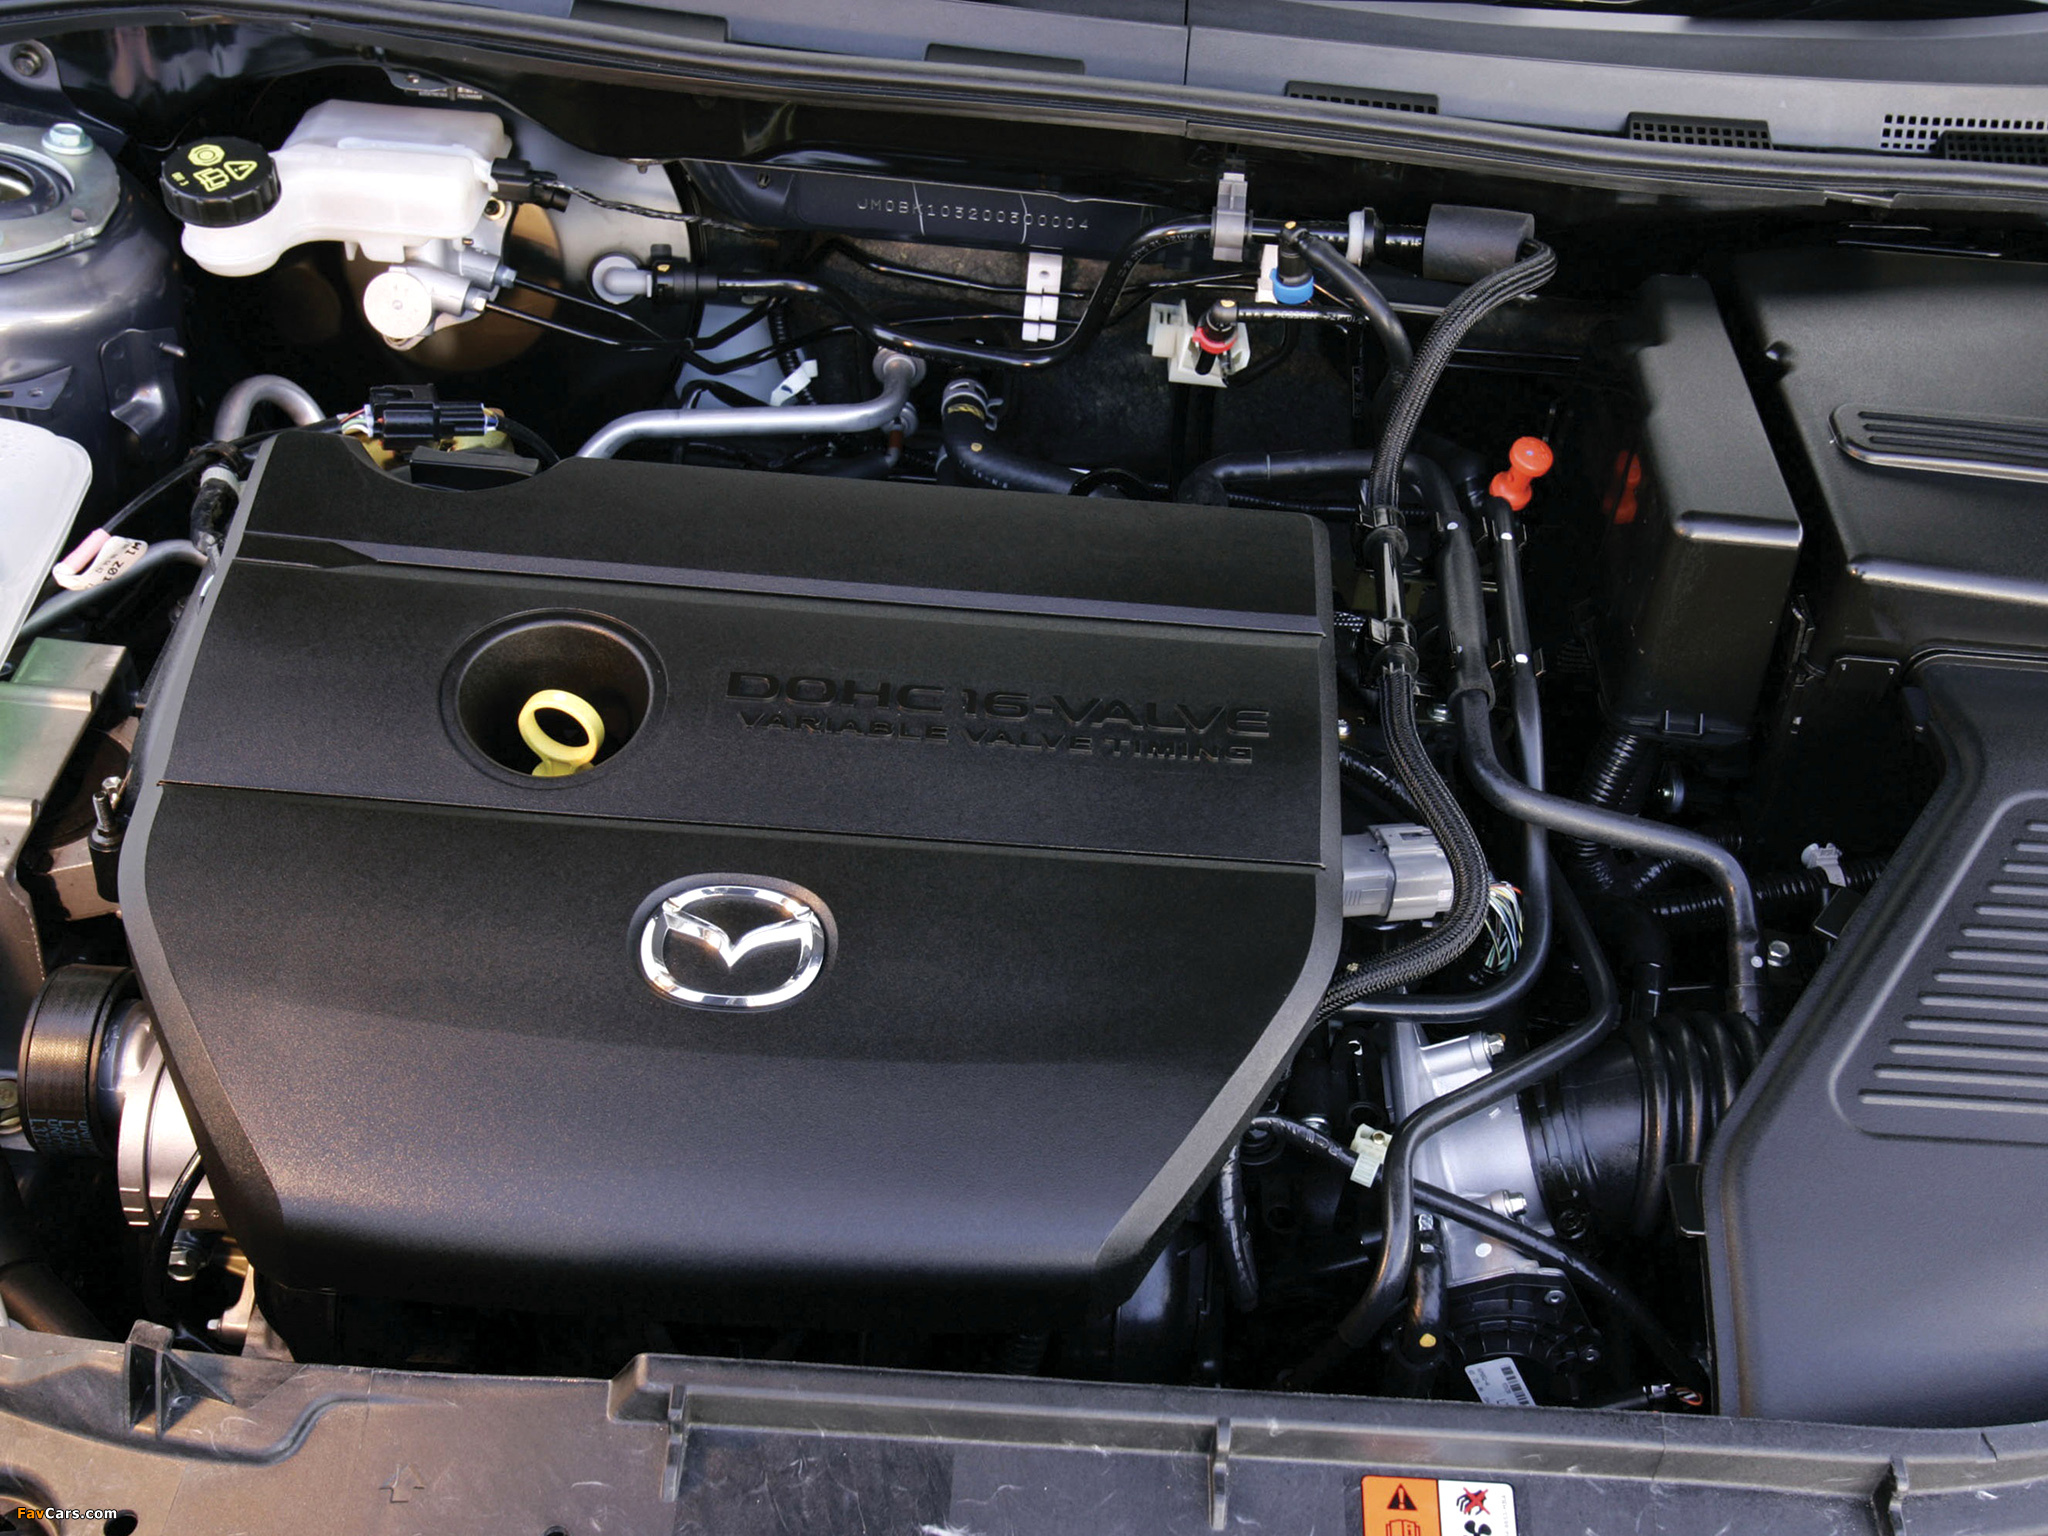 Мазда 3 масло в двигатель 1.6. Двигатель Мазда 3. Под капотом Мазда 3 BK 1.6. Мазда 3 2006 двигатель. Mazda 3 BK 2.0 под капотом.